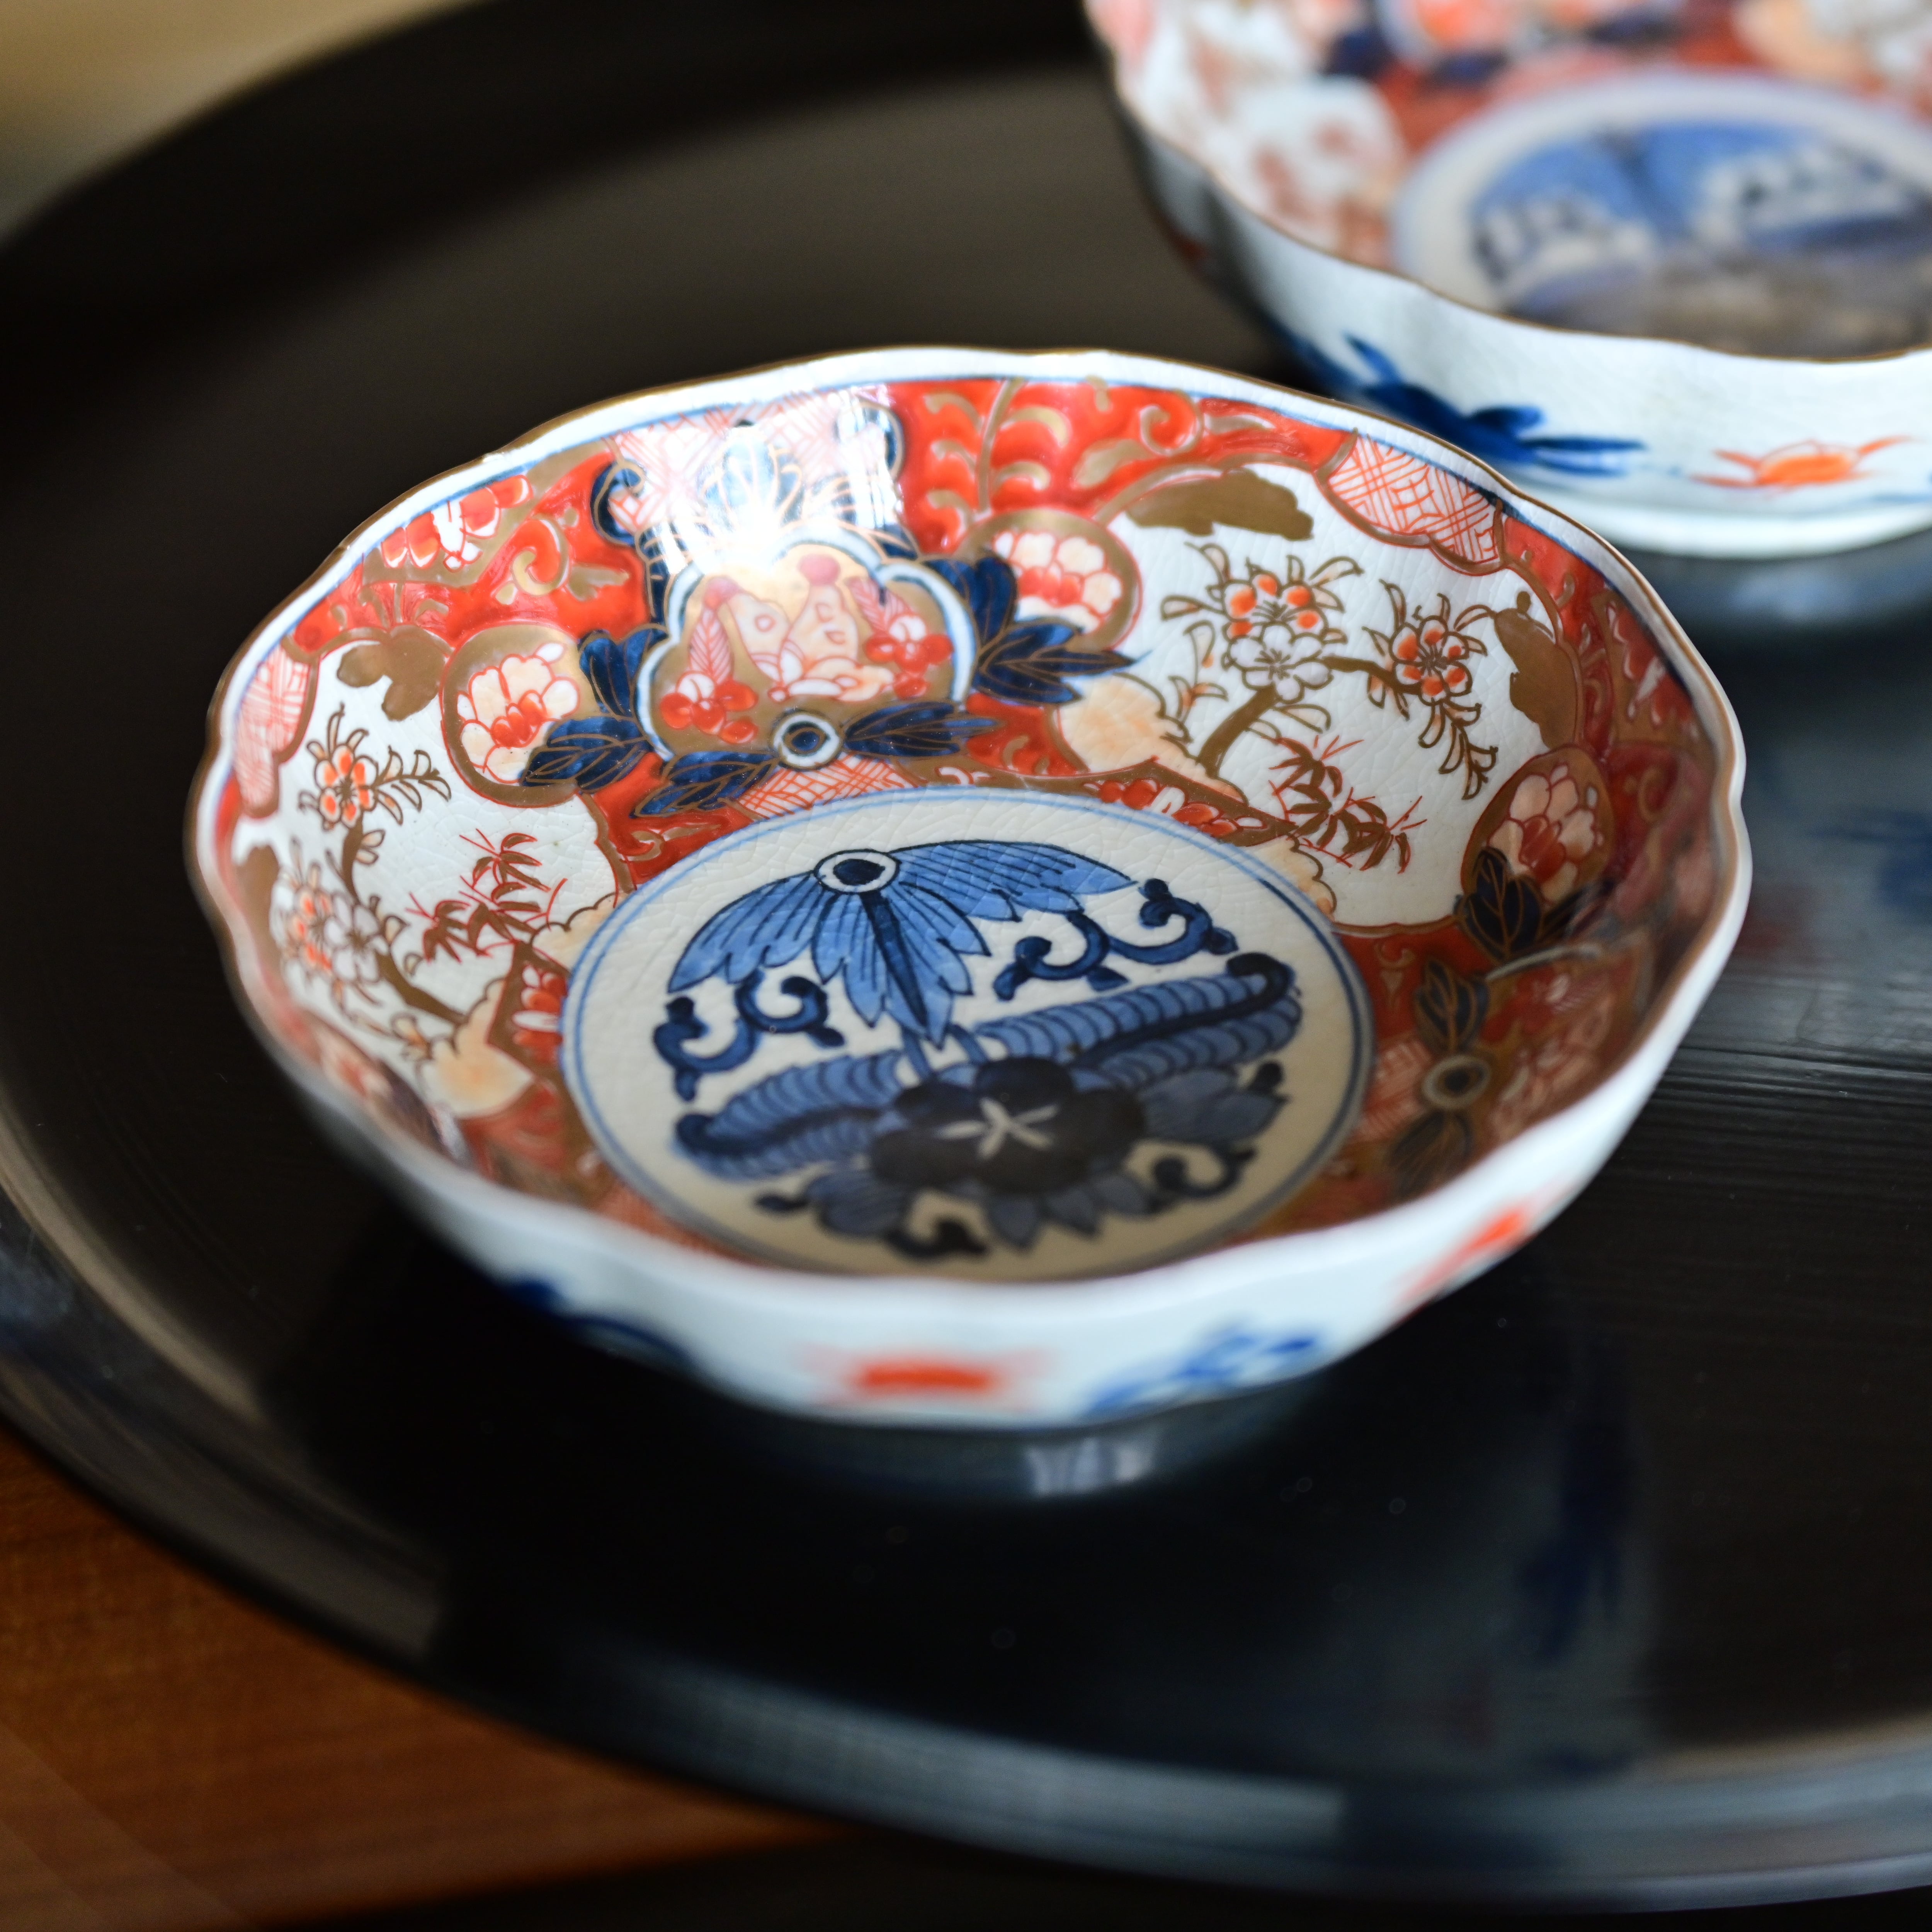 50420】 伊万里 なます皿 / Imari Bowl - N | 古道具・器 ハナレ きりゅう